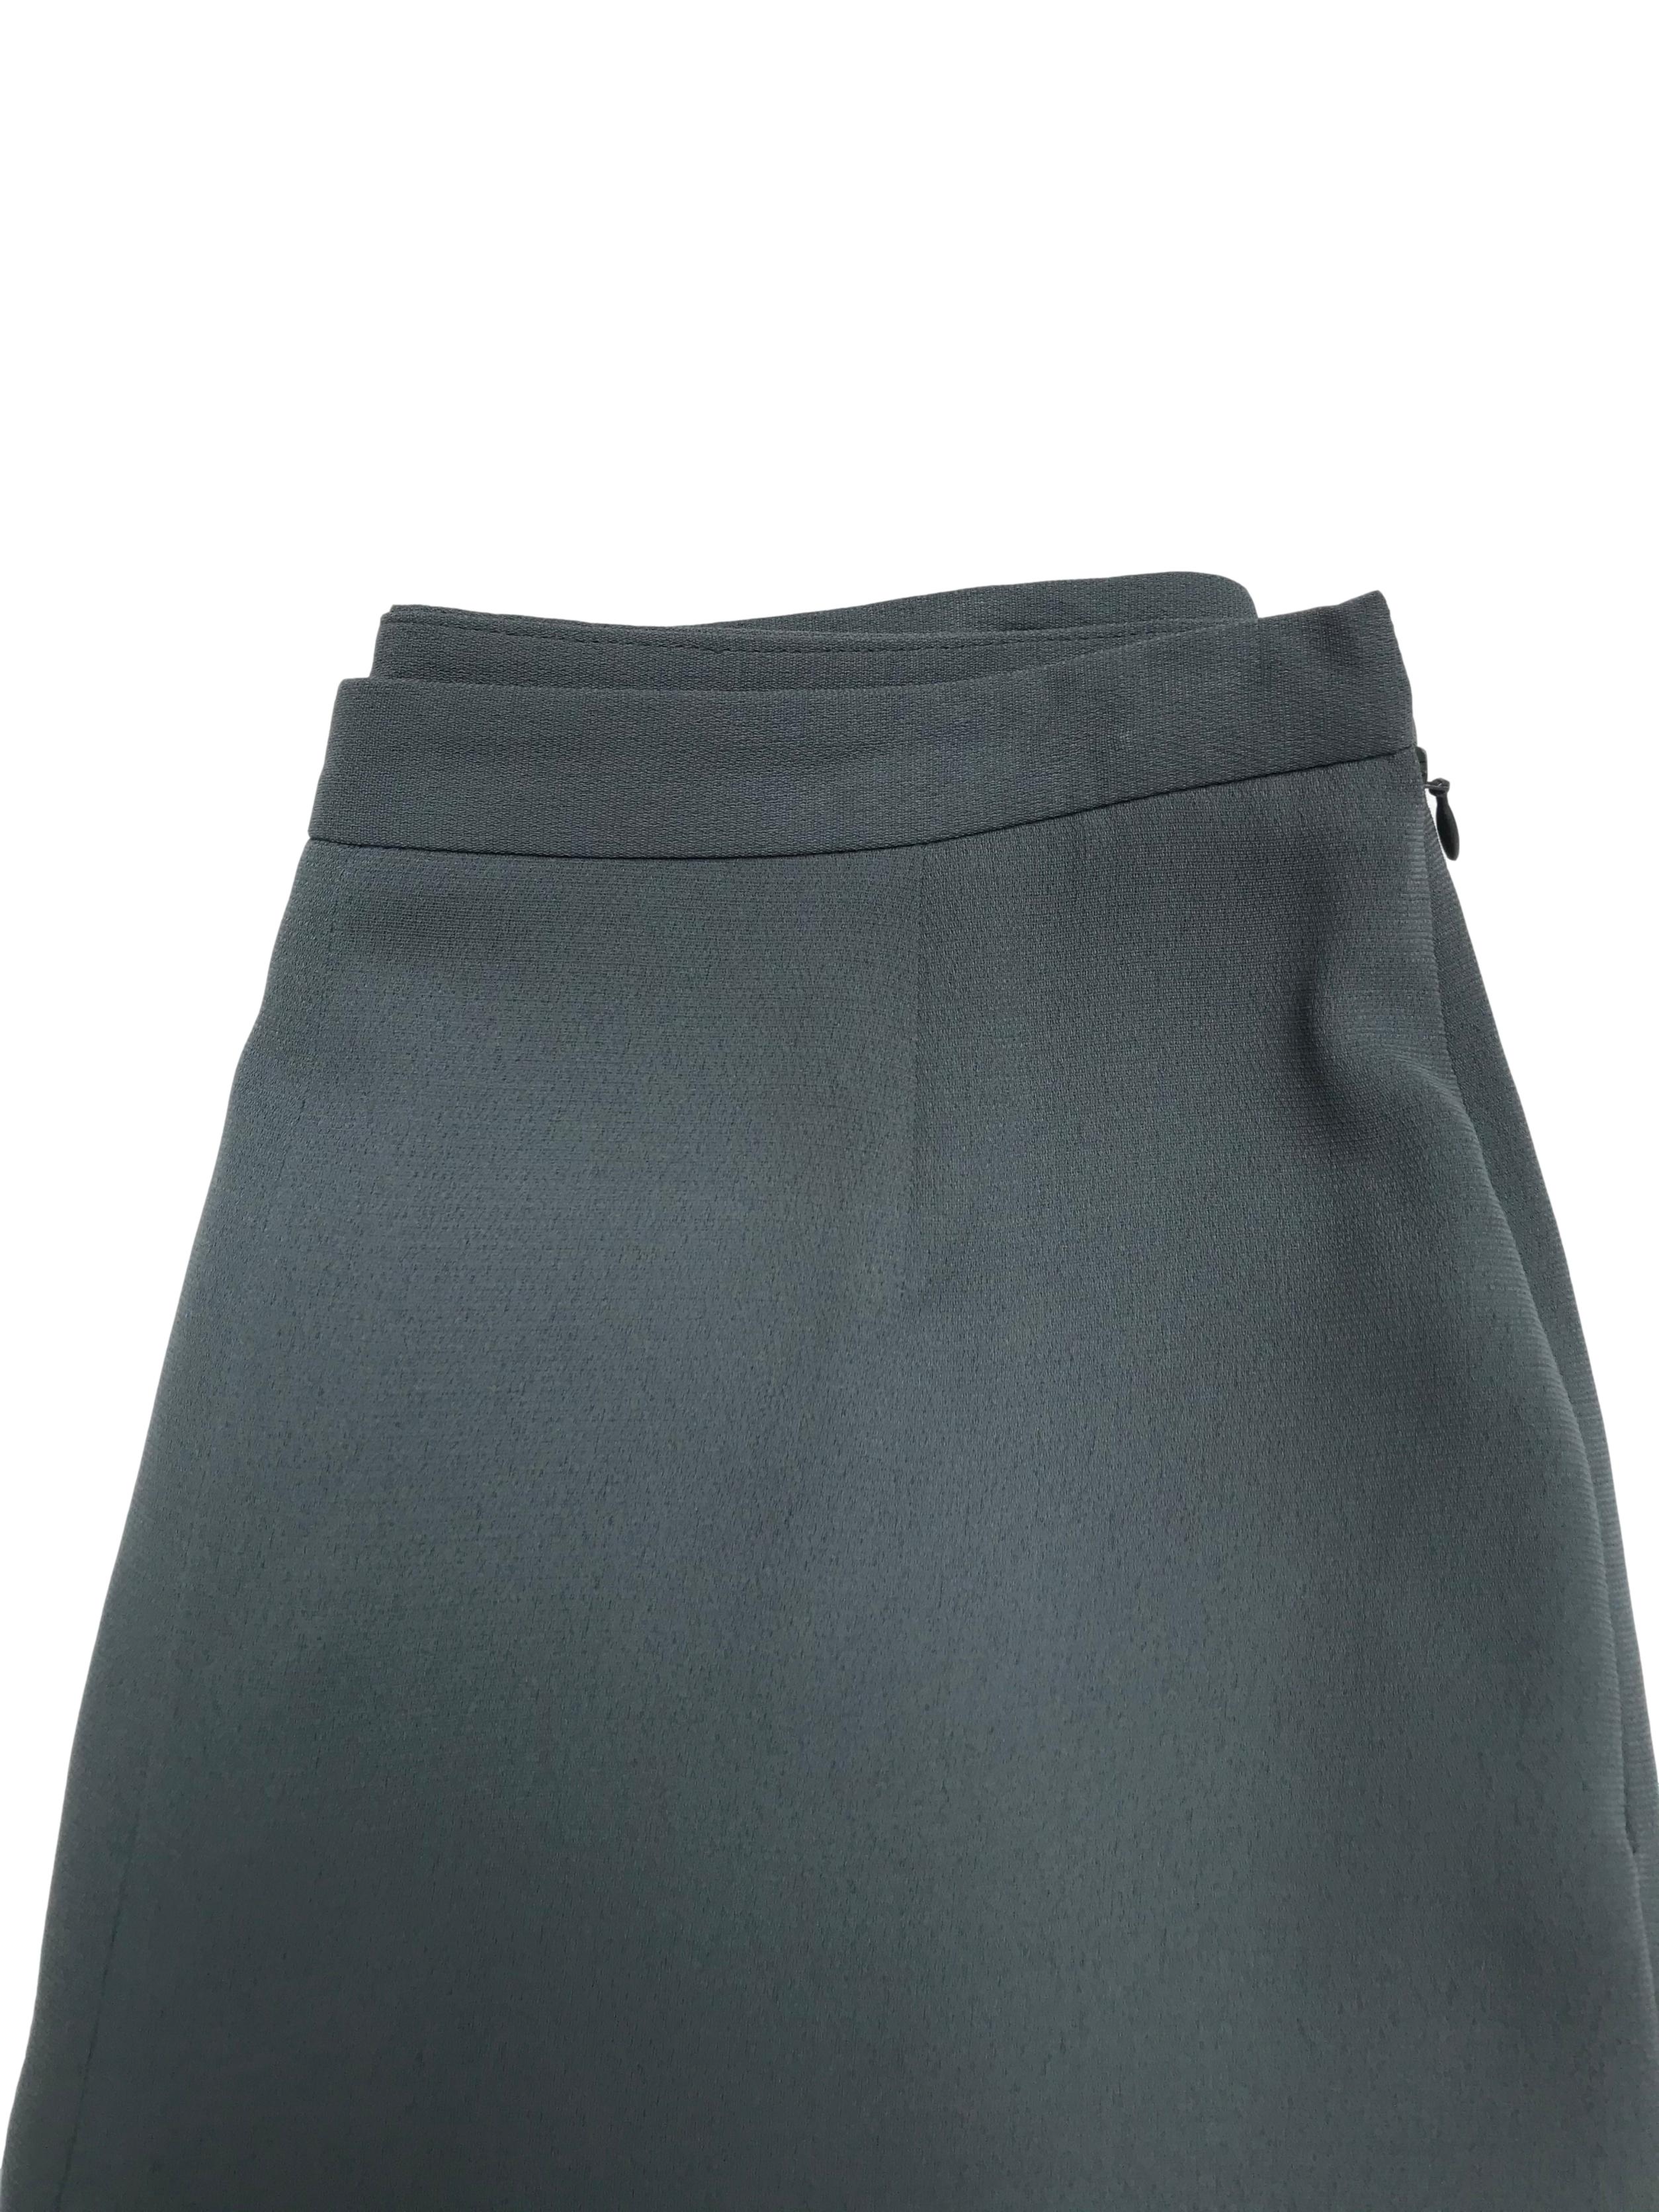 Pantalón vintage verde a la cintura, forrado, corte recto con cierre lateral. Cintura 72cm Cadera 100cm. Tiene Blazer conjunto